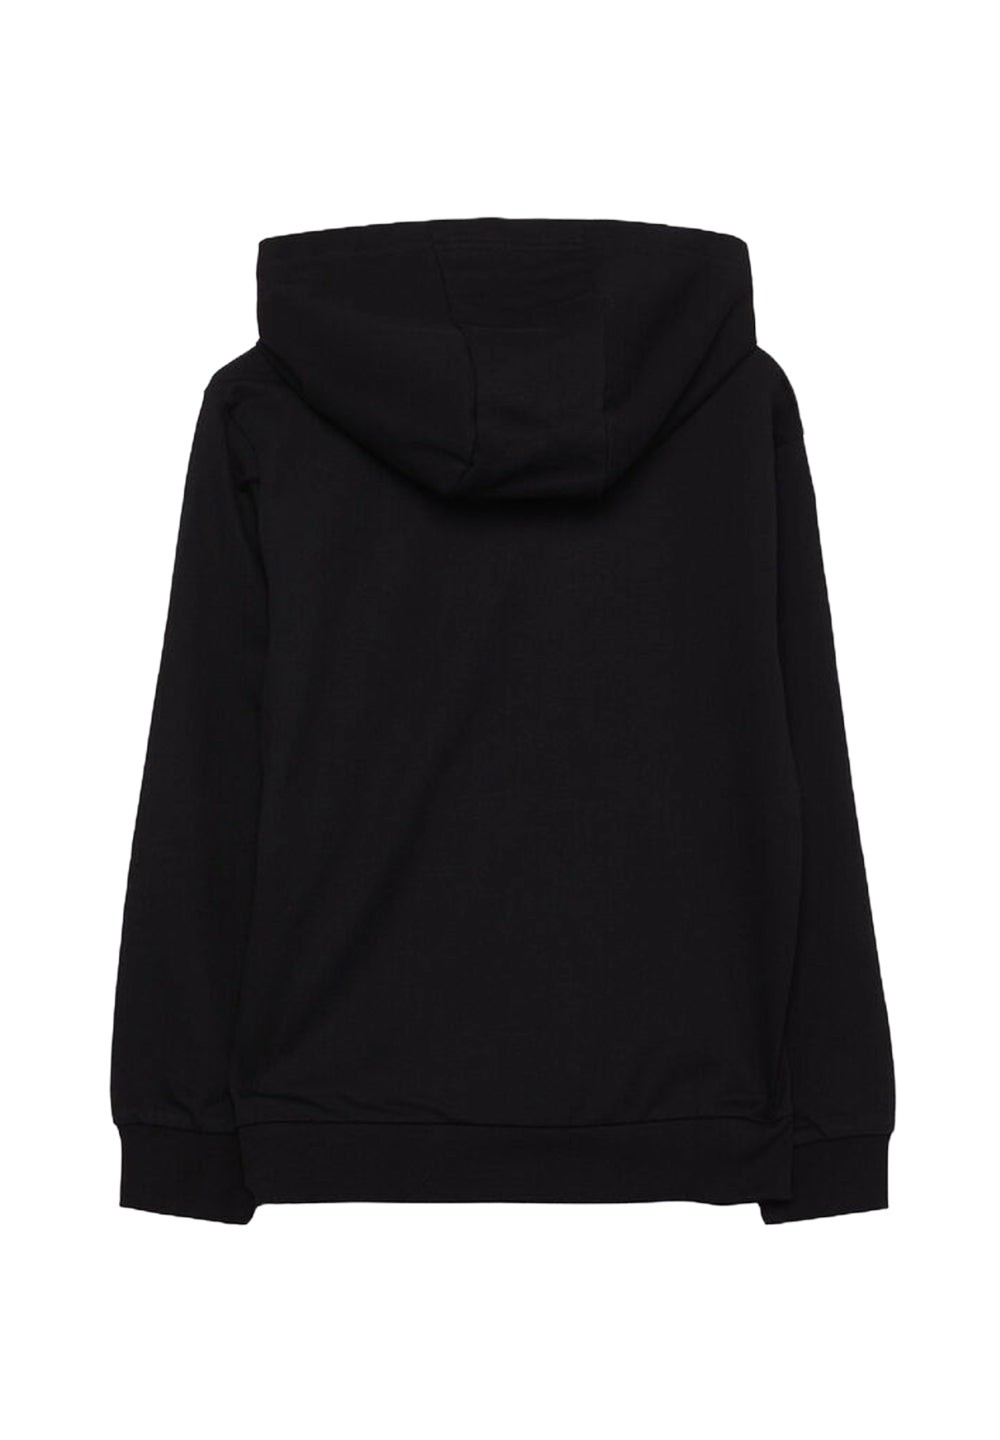 Schwarzes Kapuzensweatshirt für Jungen